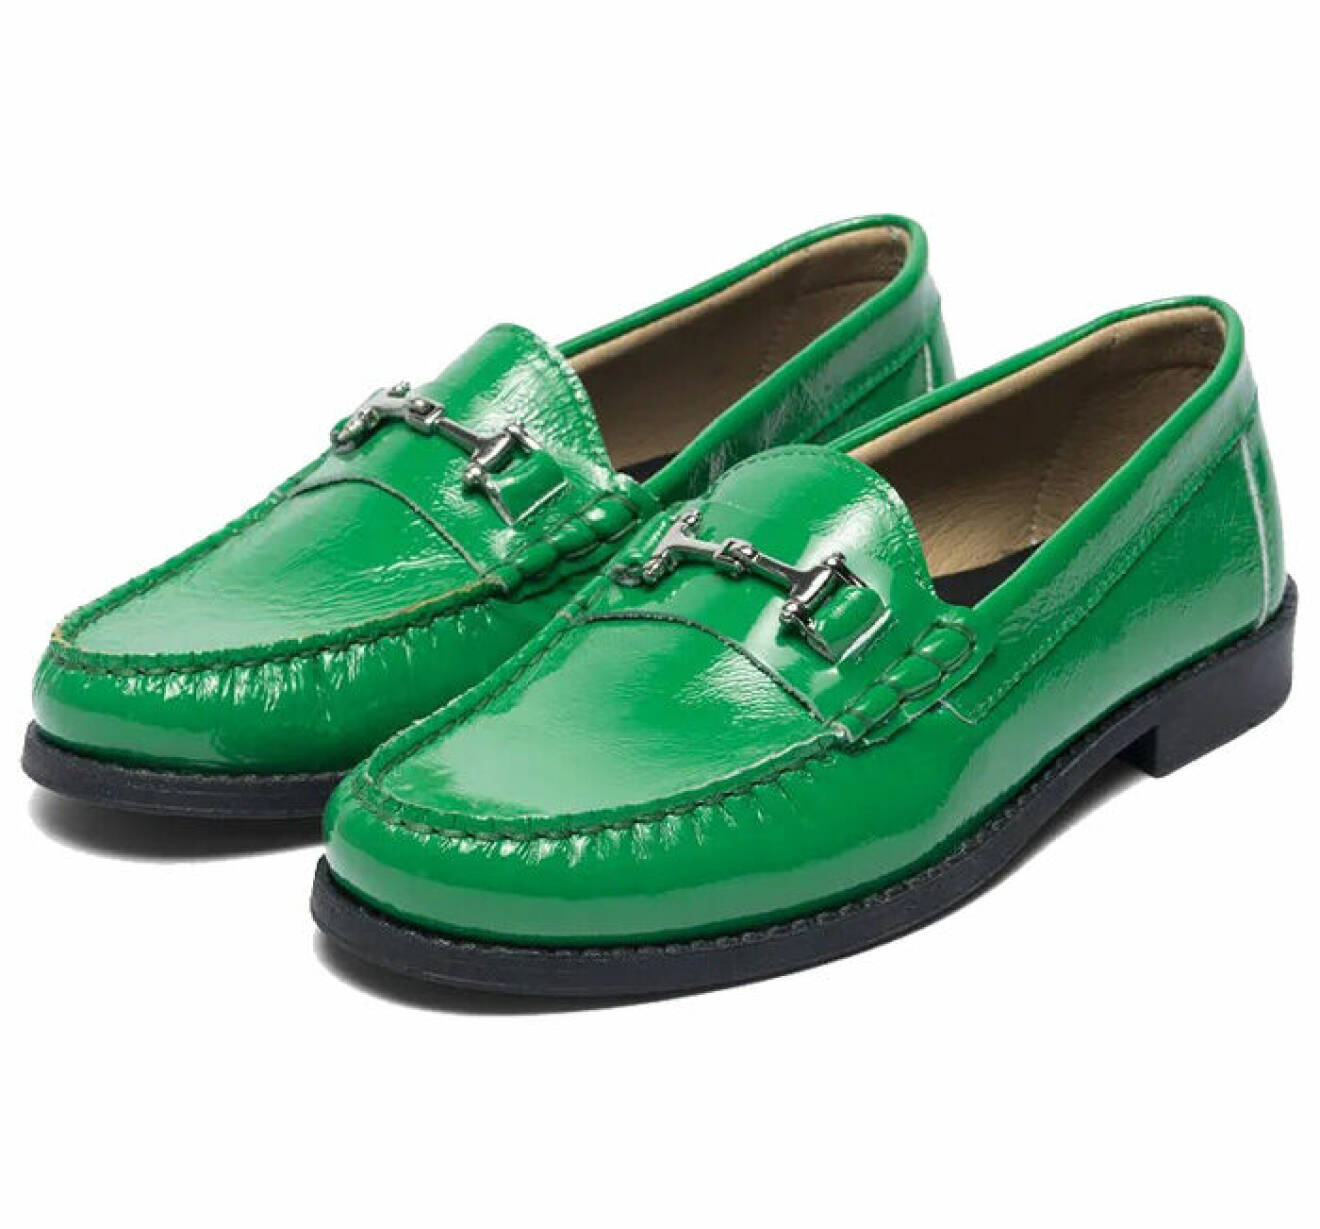 gröna loafers av lackat läder för dam från bianco